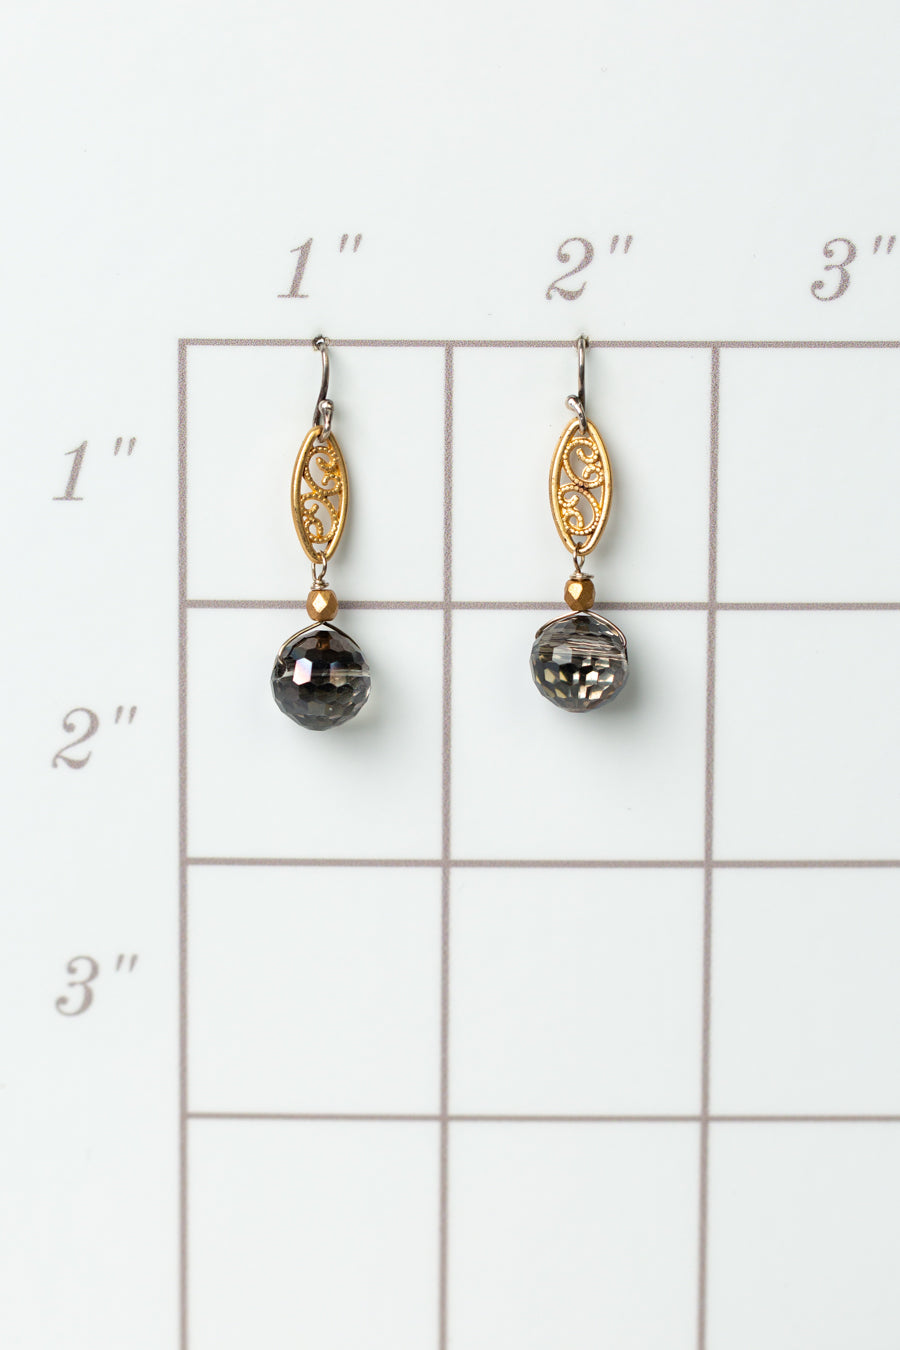 Silver & Gold Czech Glass Filigree Dangle Earrings (limited)